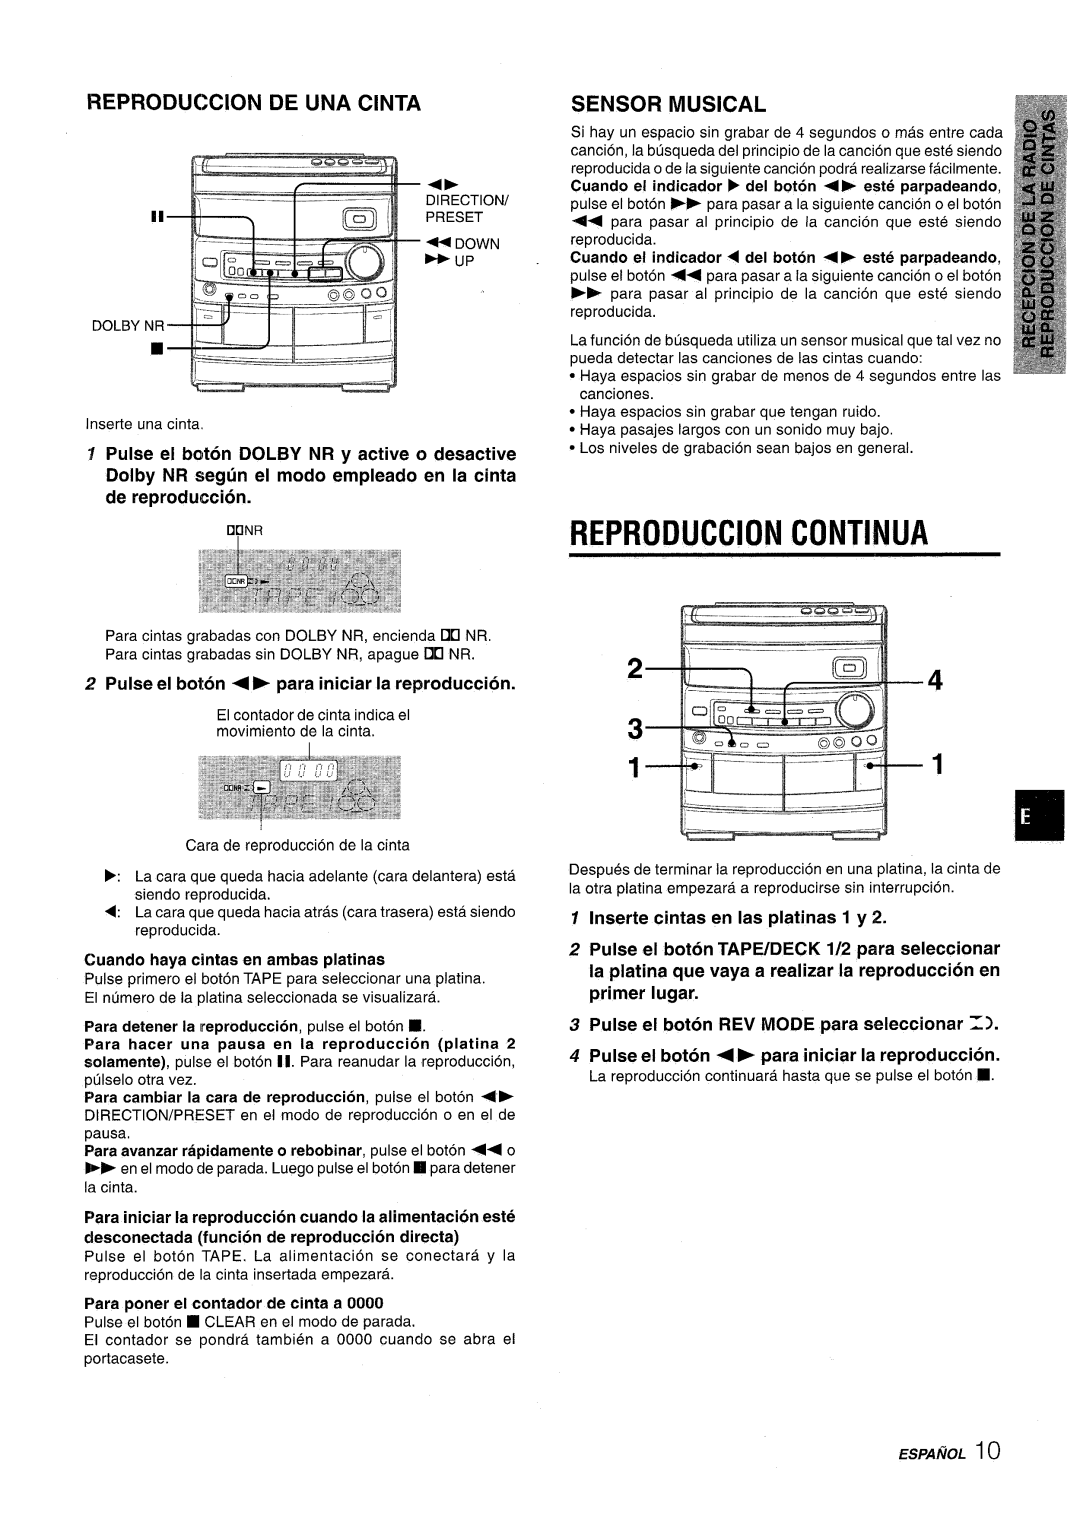 Aiwa NSX-AV800 manual Reproduction Continua, Reproduction De Una Cinta, Sensor Musical, Inserte cintas en Ias platinas 1 y 